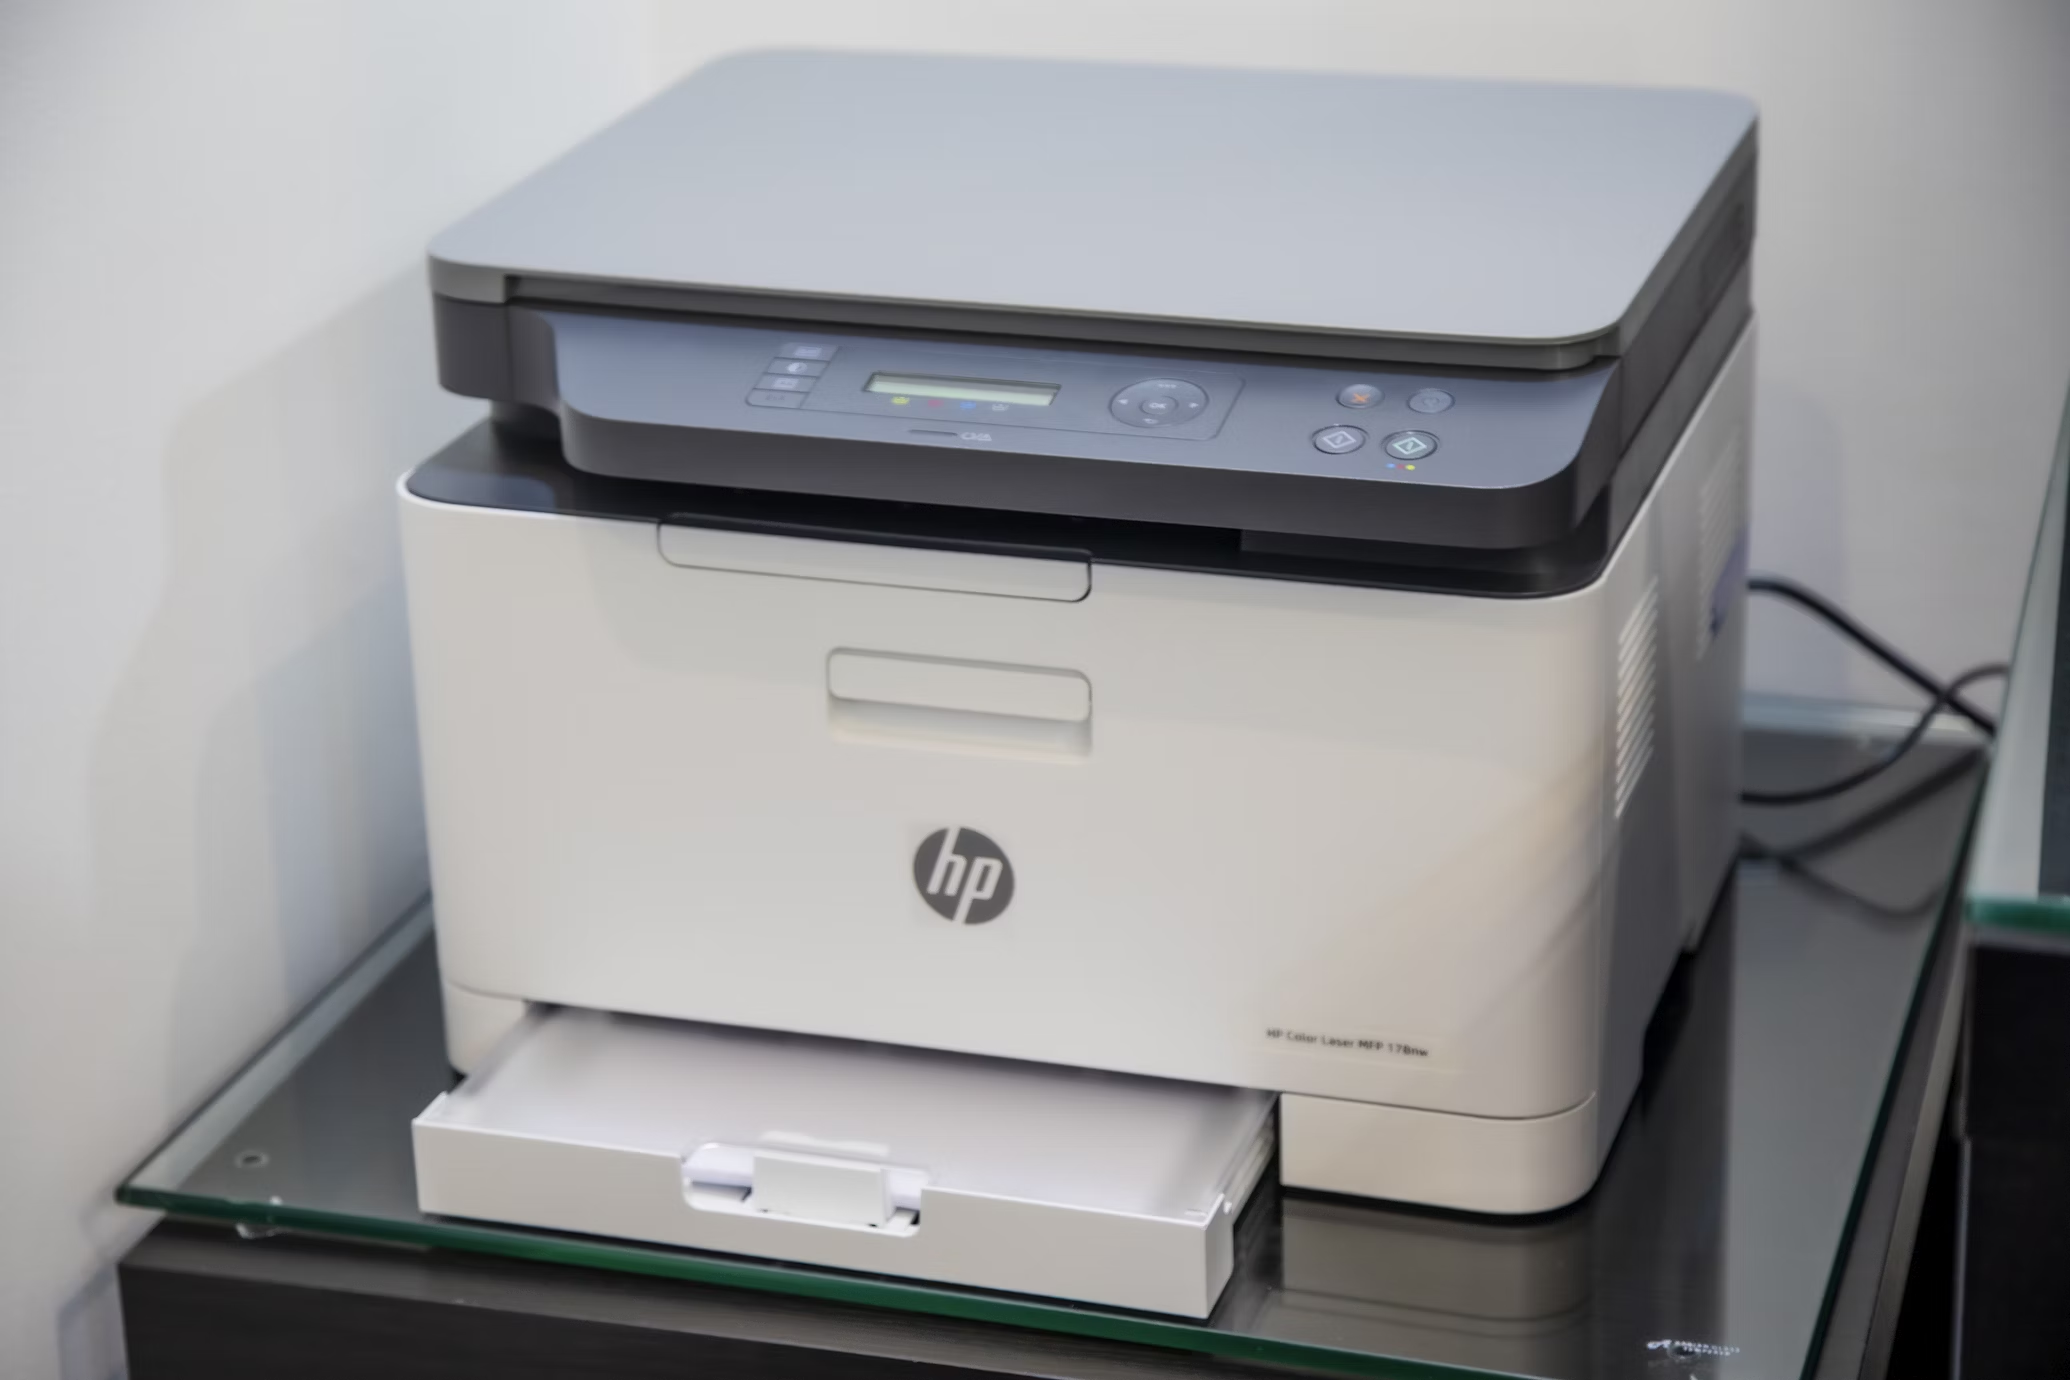 HP spausdintuvo kasetės – kur jų ieškoti?